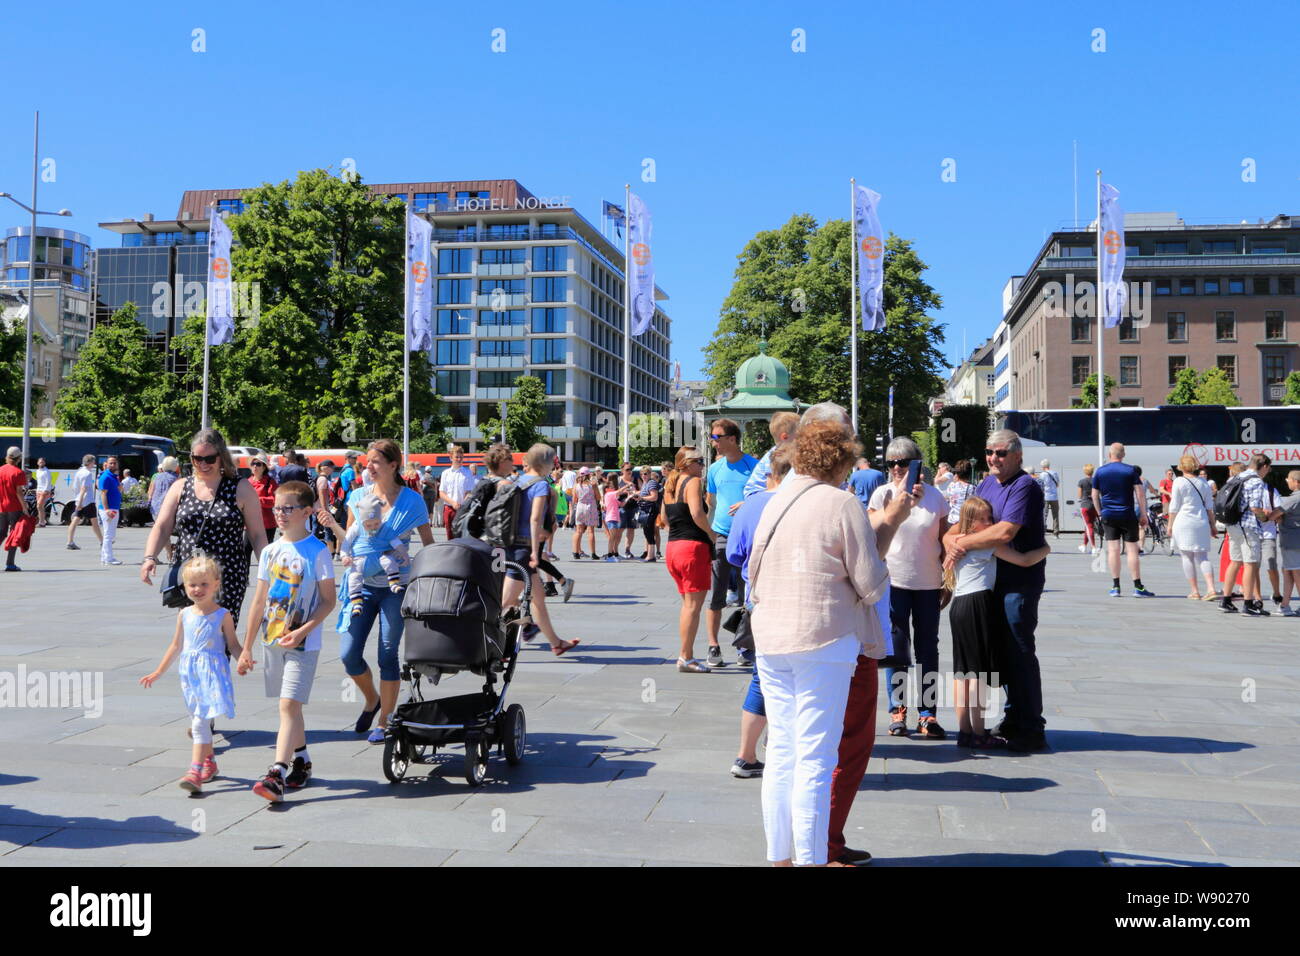 Leute die öffentlichen Platz, Festplassen, in Bergen, Norwegen, im Sommer. Hotel Norge ist im Hintergrund zu sehen. Stockfoto